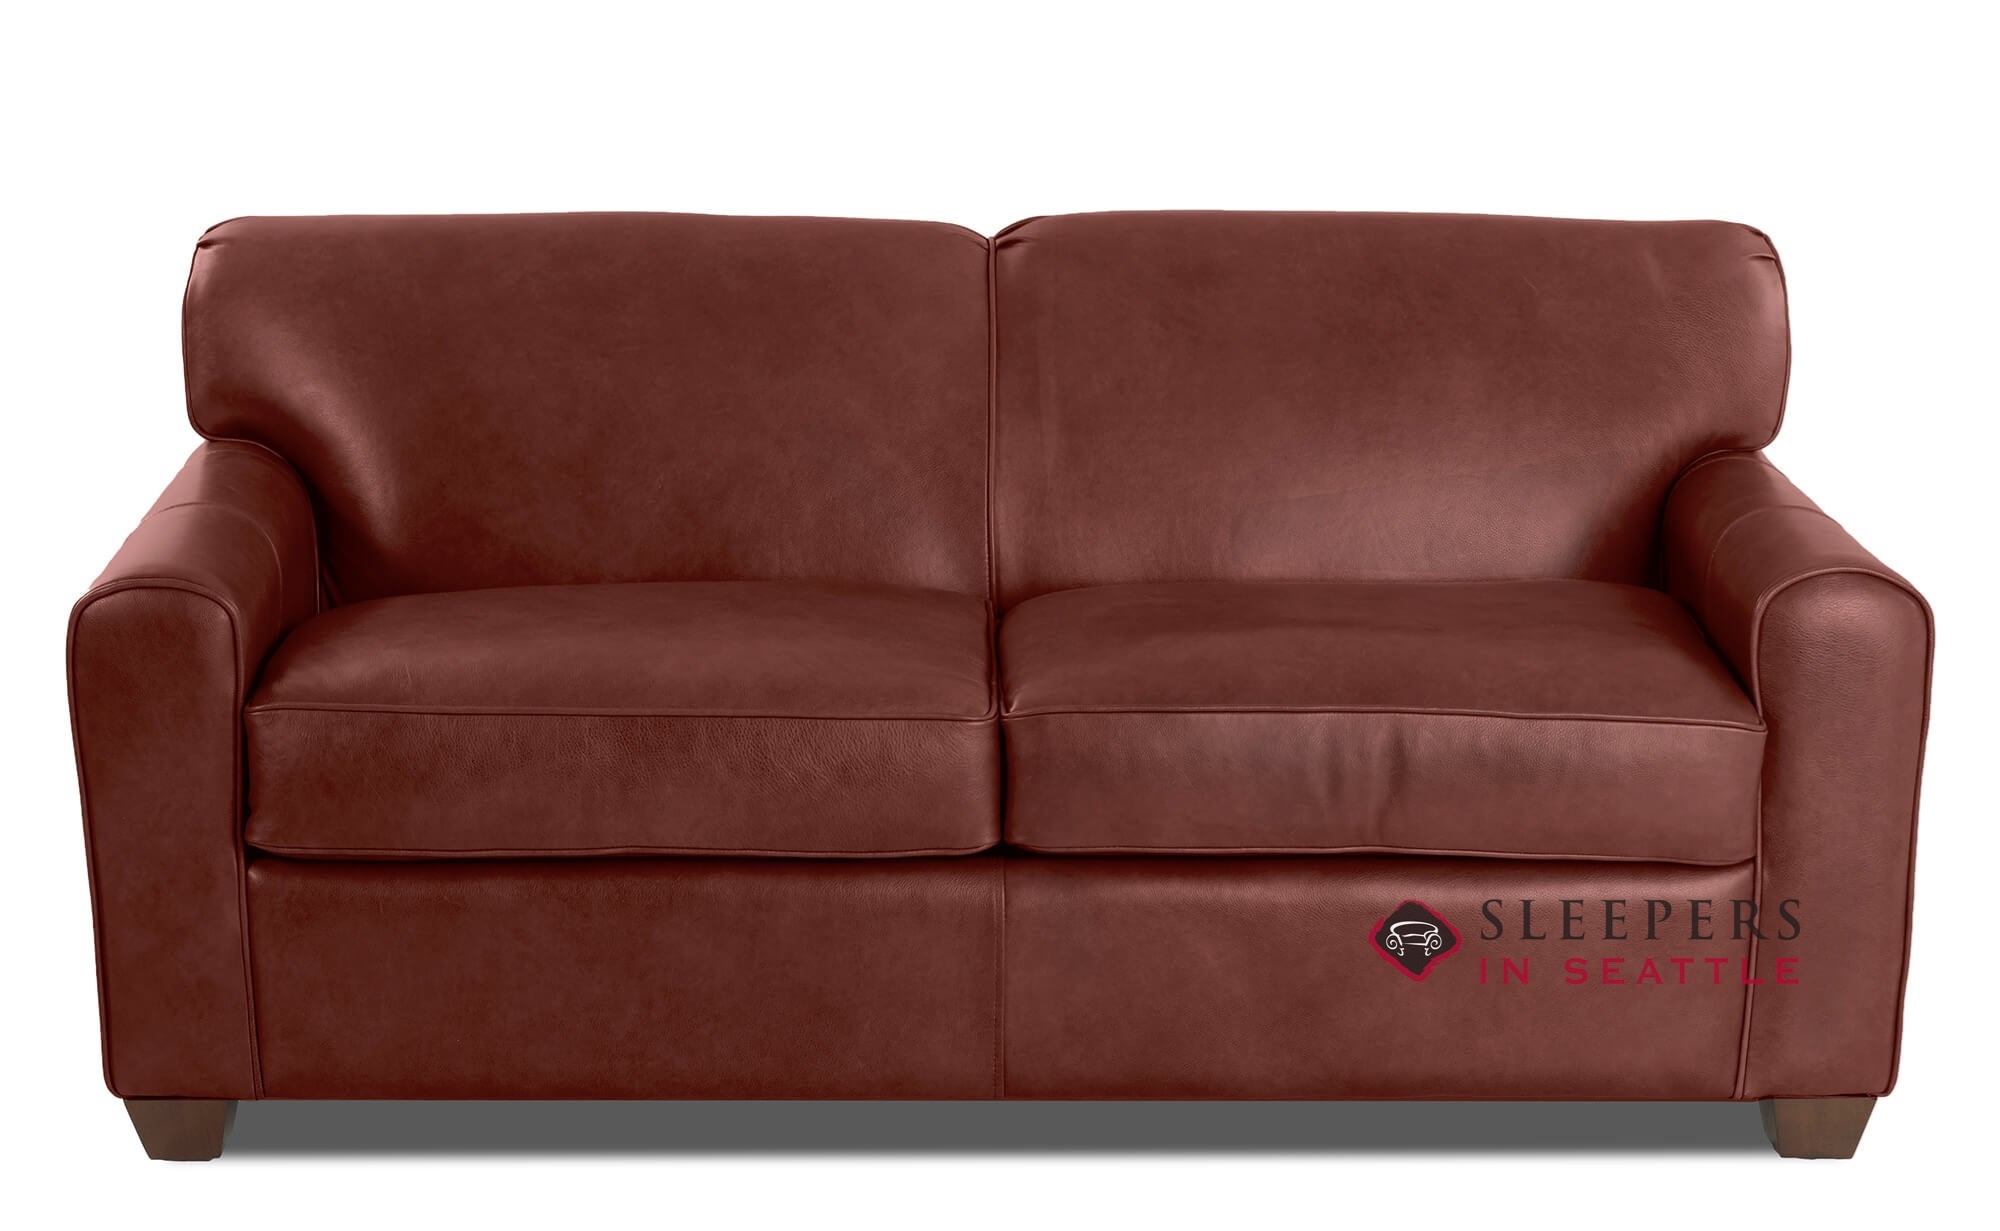 leather sleeper sofa uk